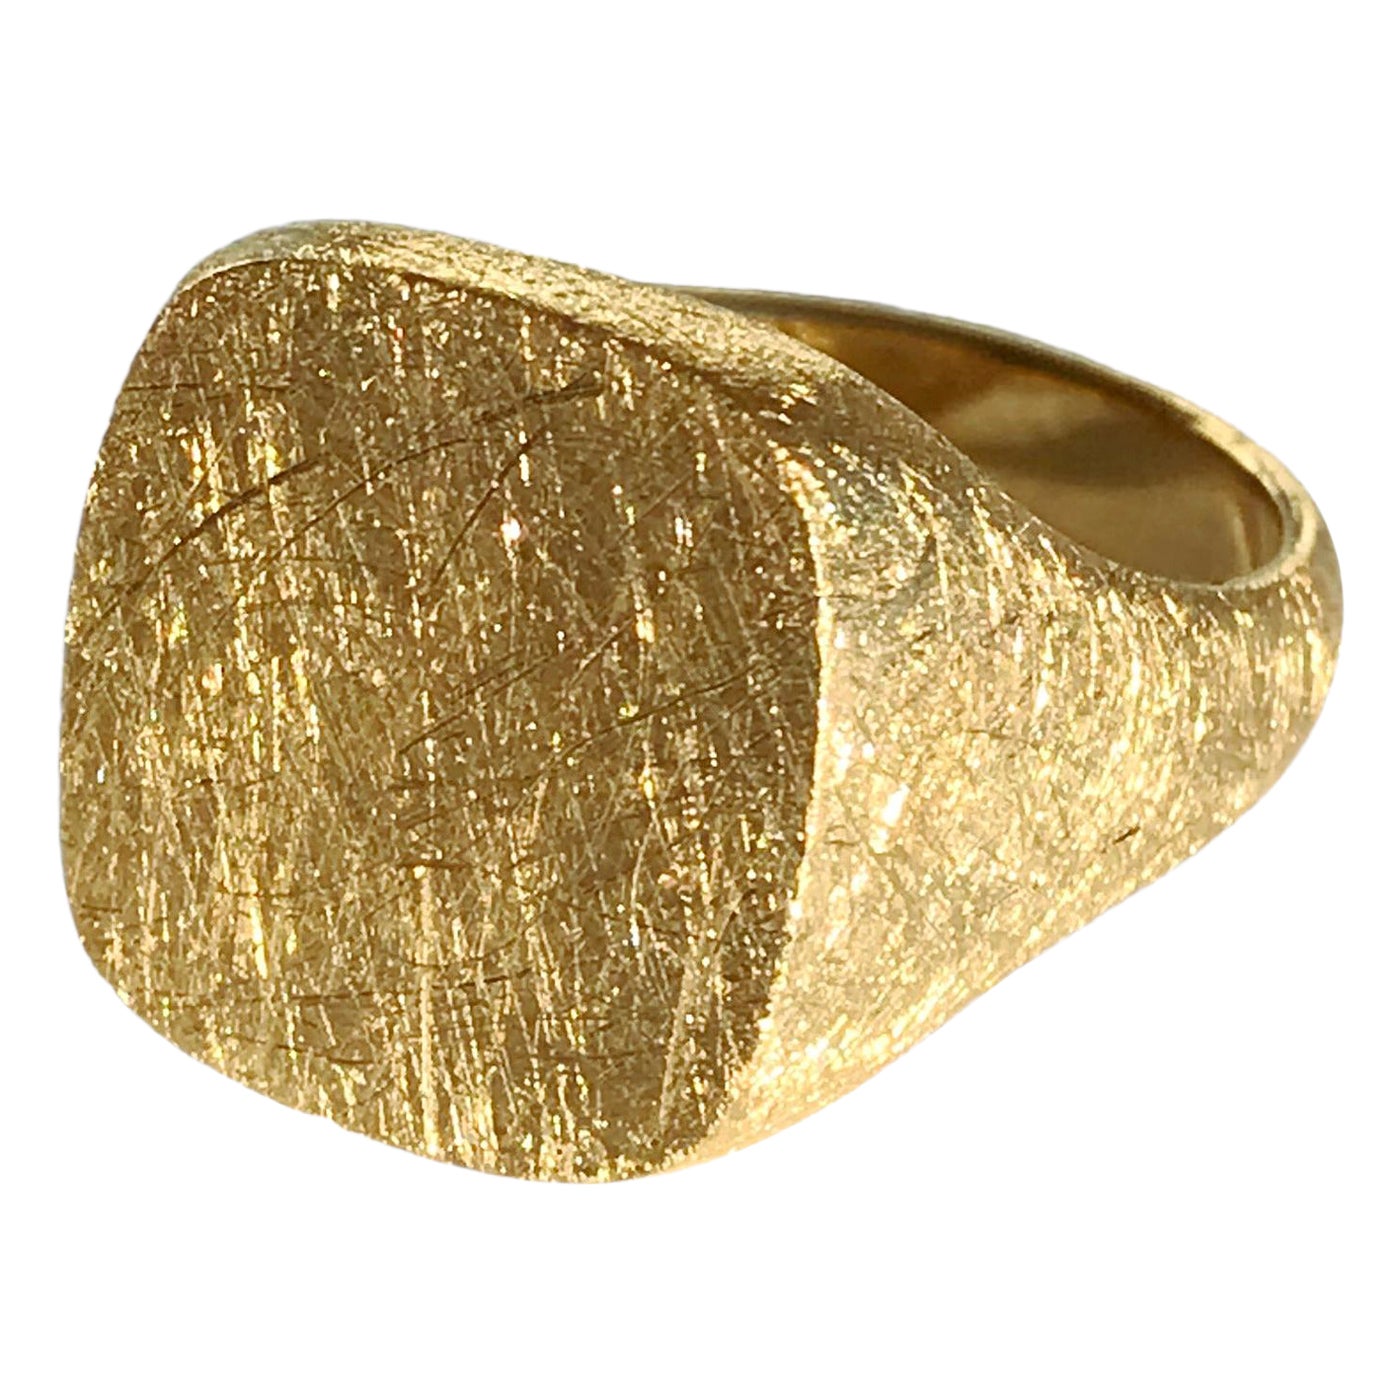 Dalben 18 Karat Yellow Gold Signet Ring